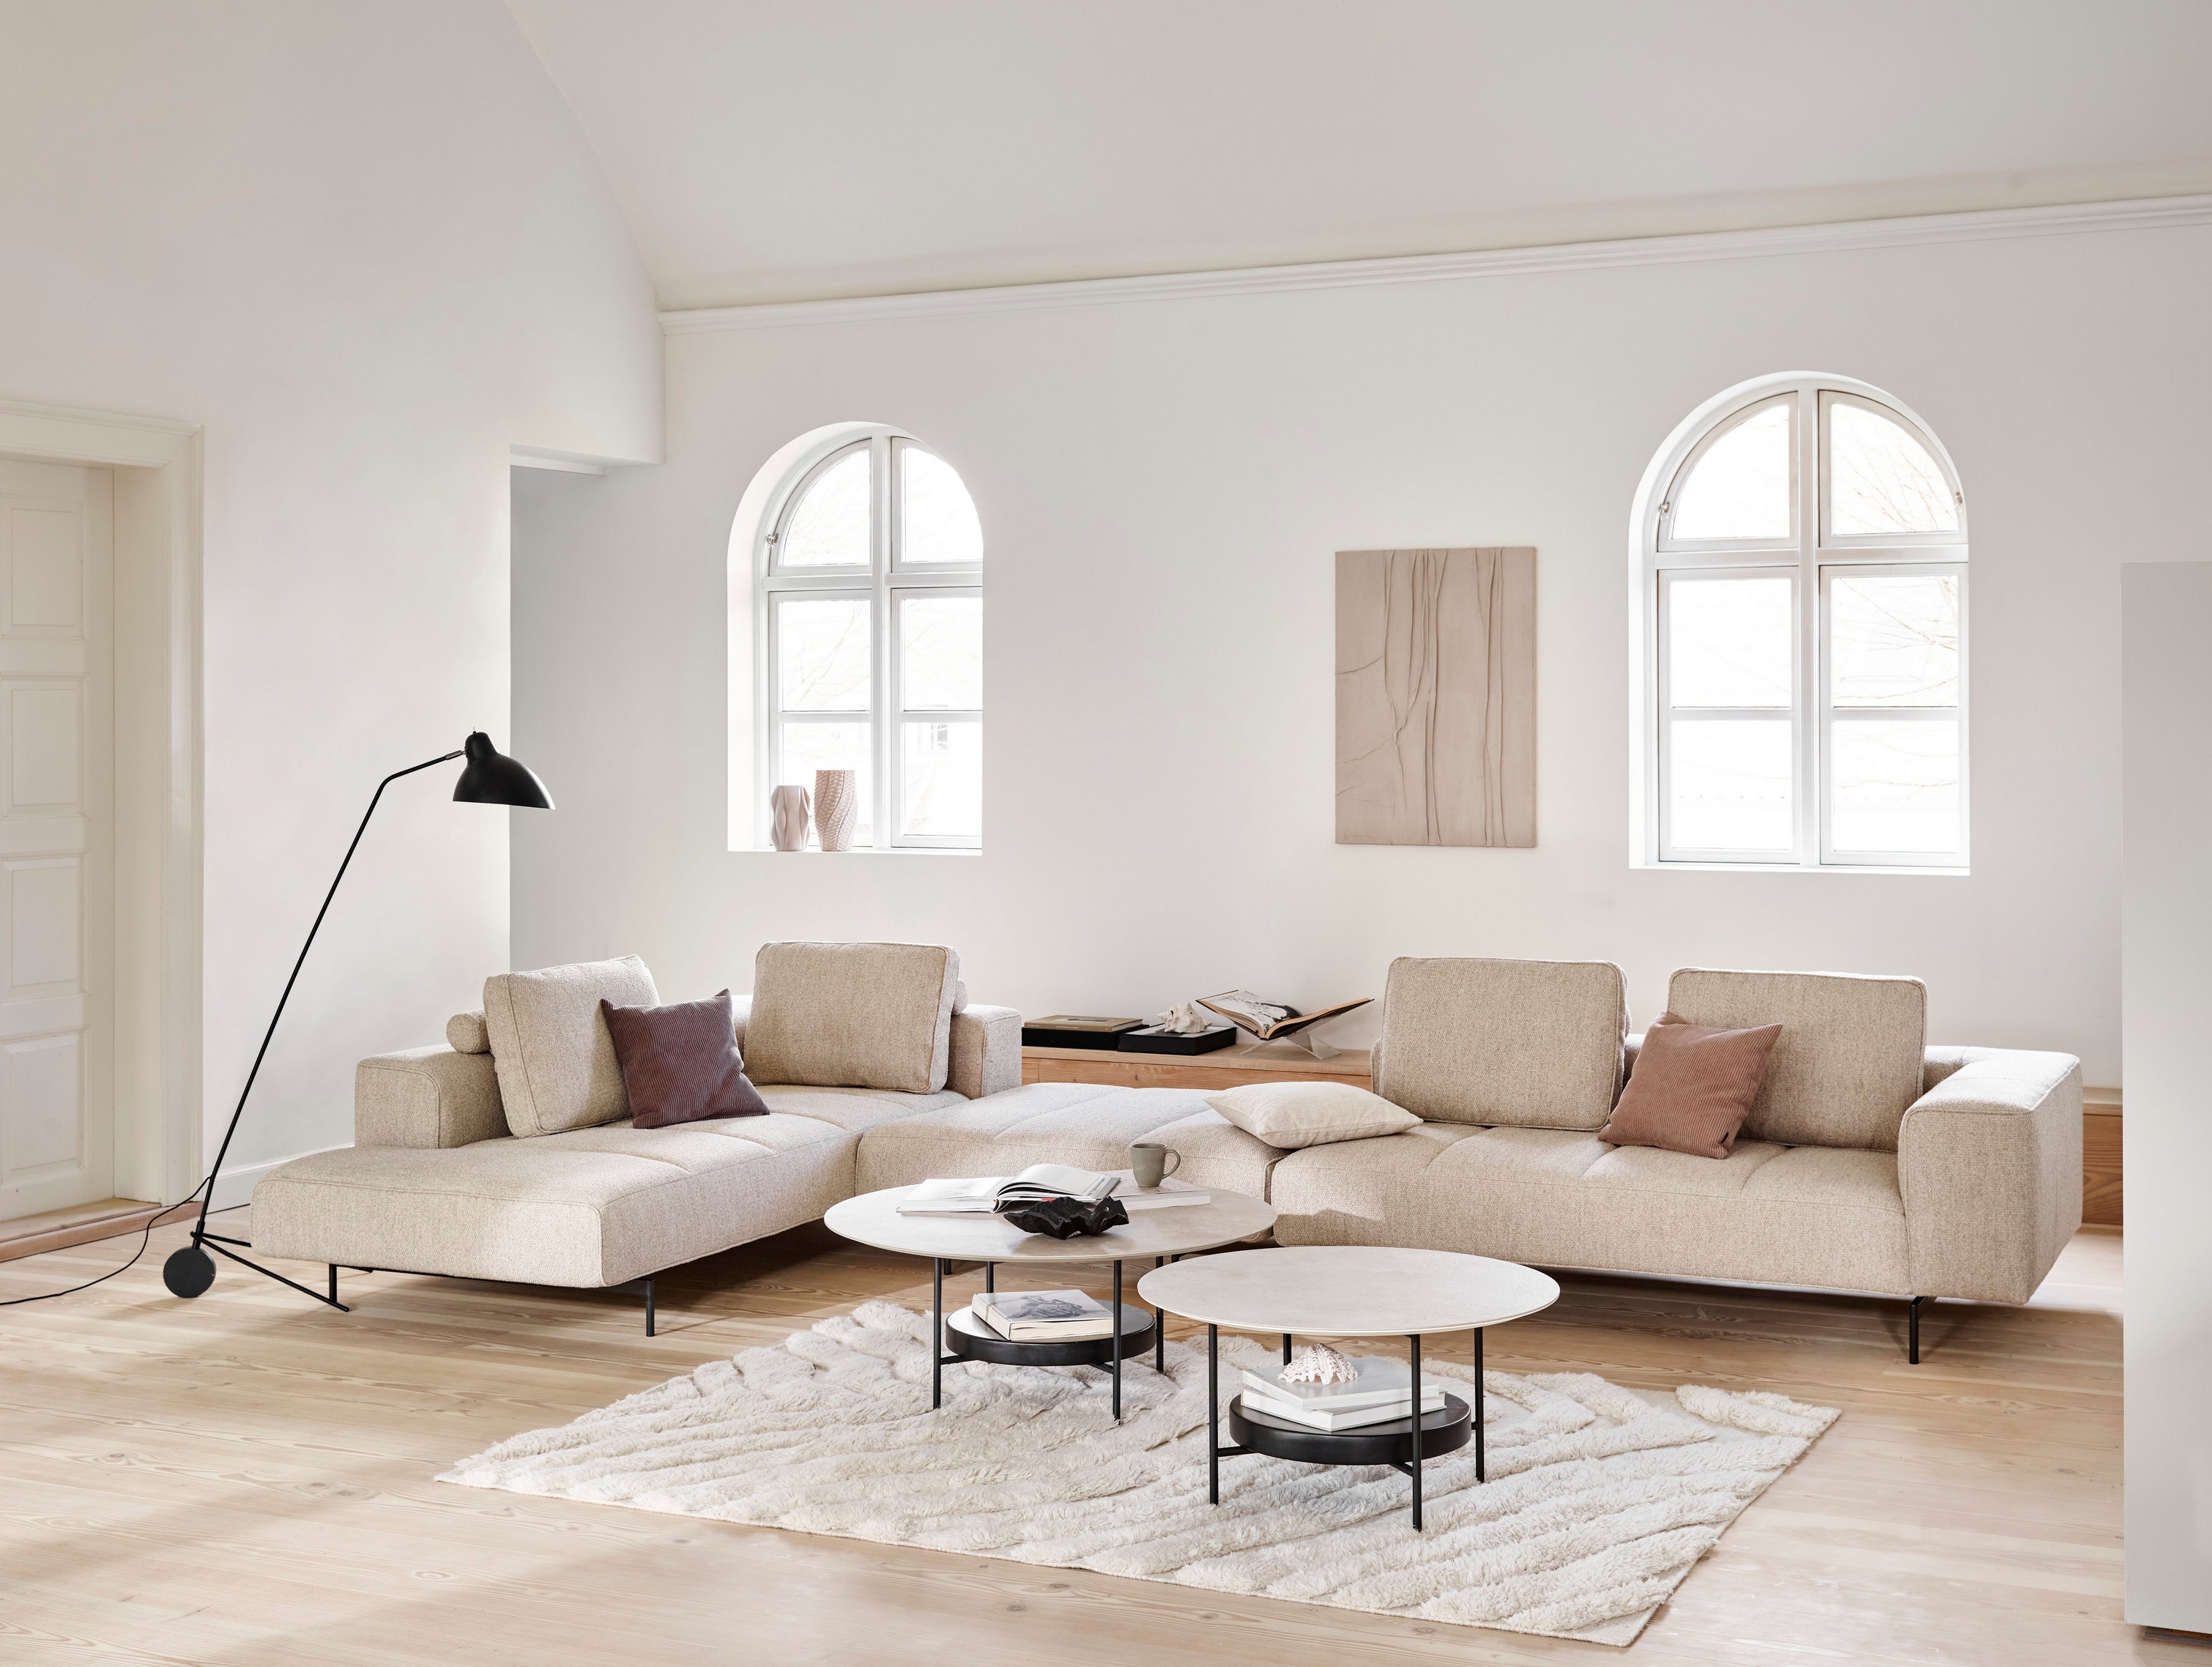 Minimalistický obývací pokoj s modulární pohovkou Amsterdam, konferenčními stolky Madrid, stojací lampou a obloukovými okny.